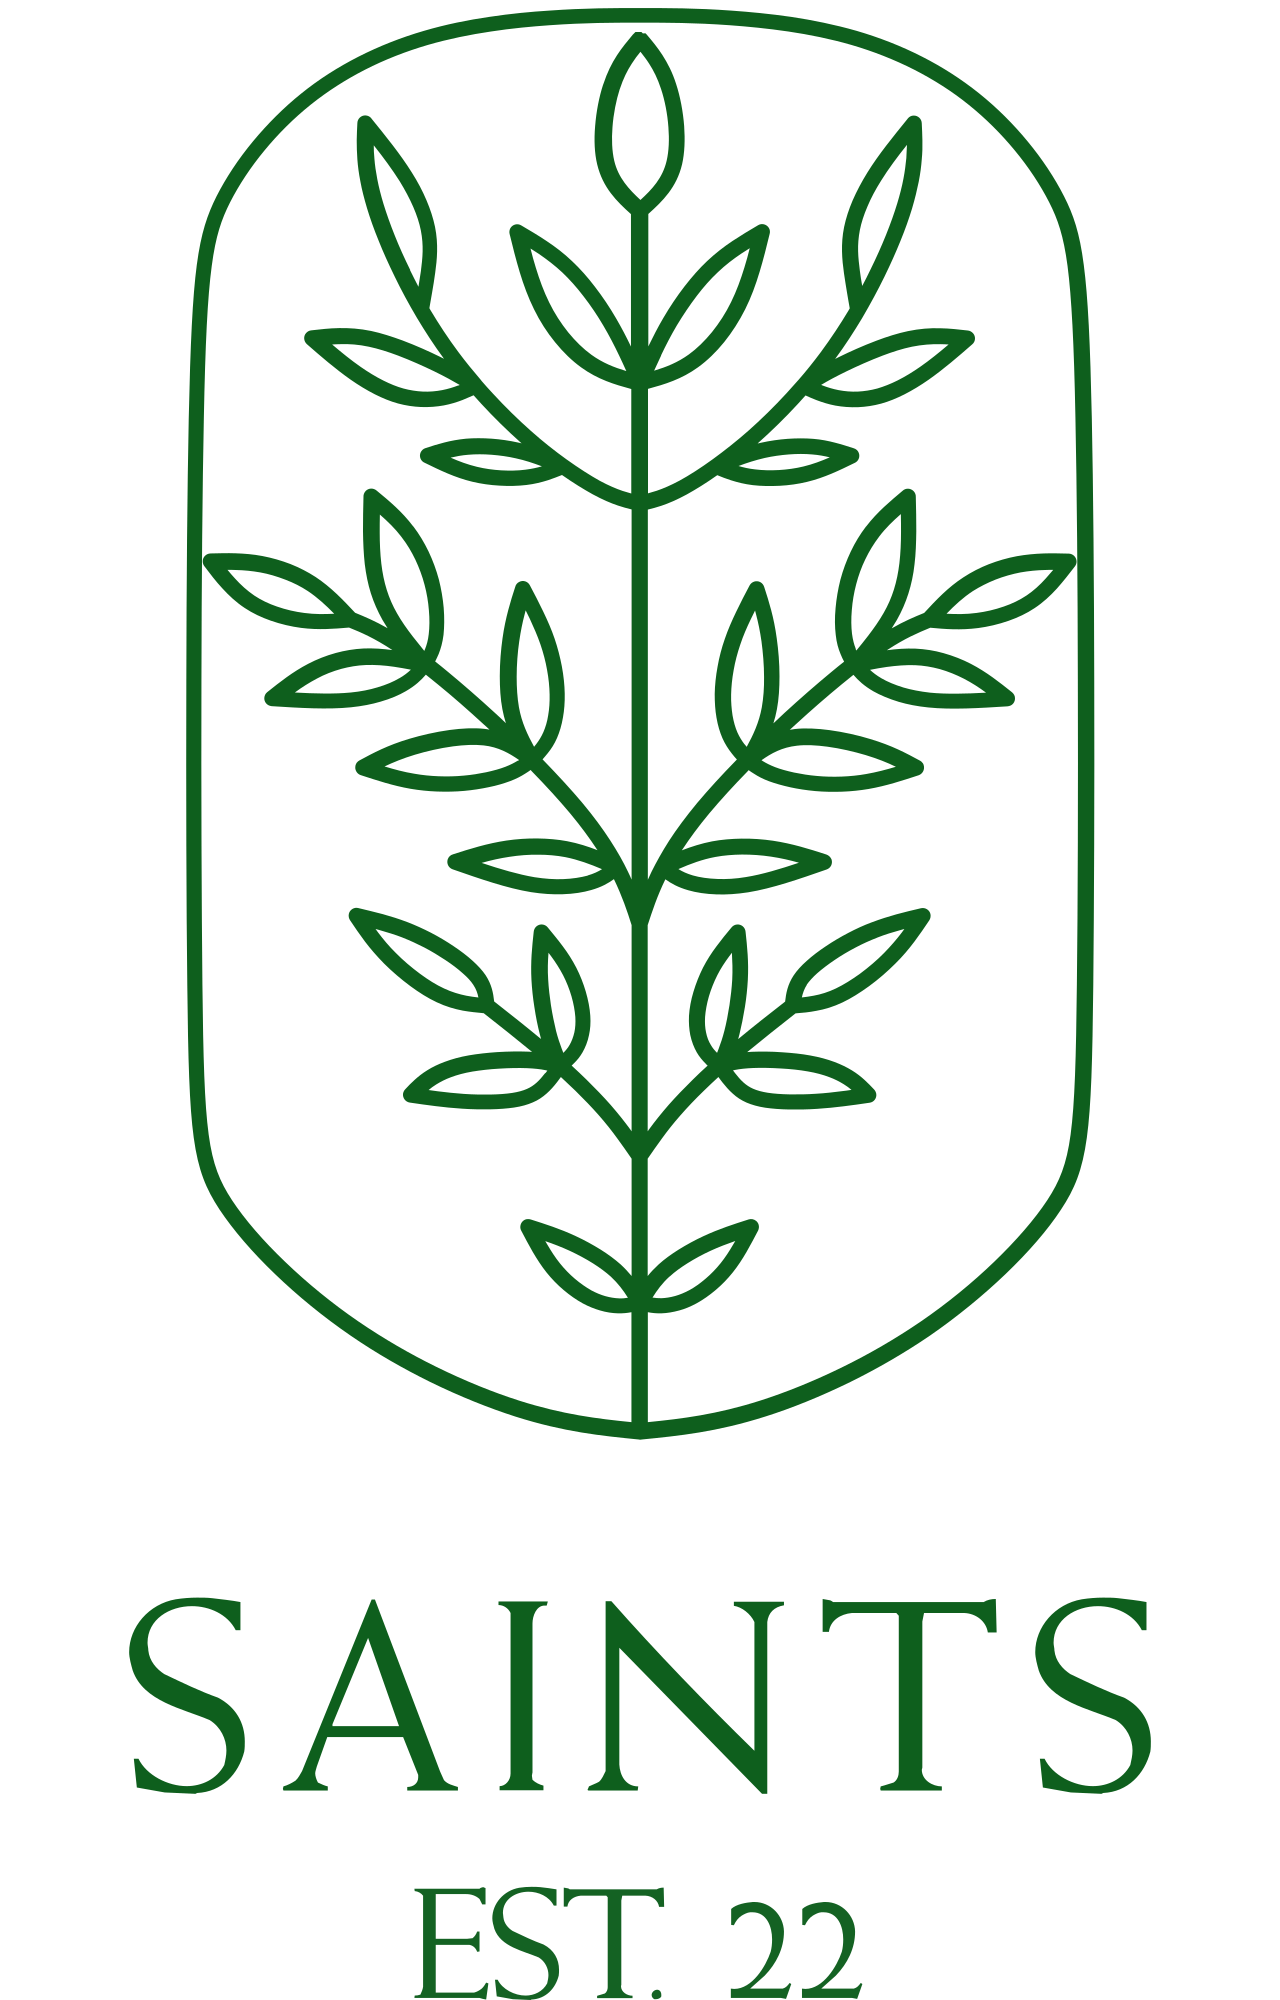 Saints's web page